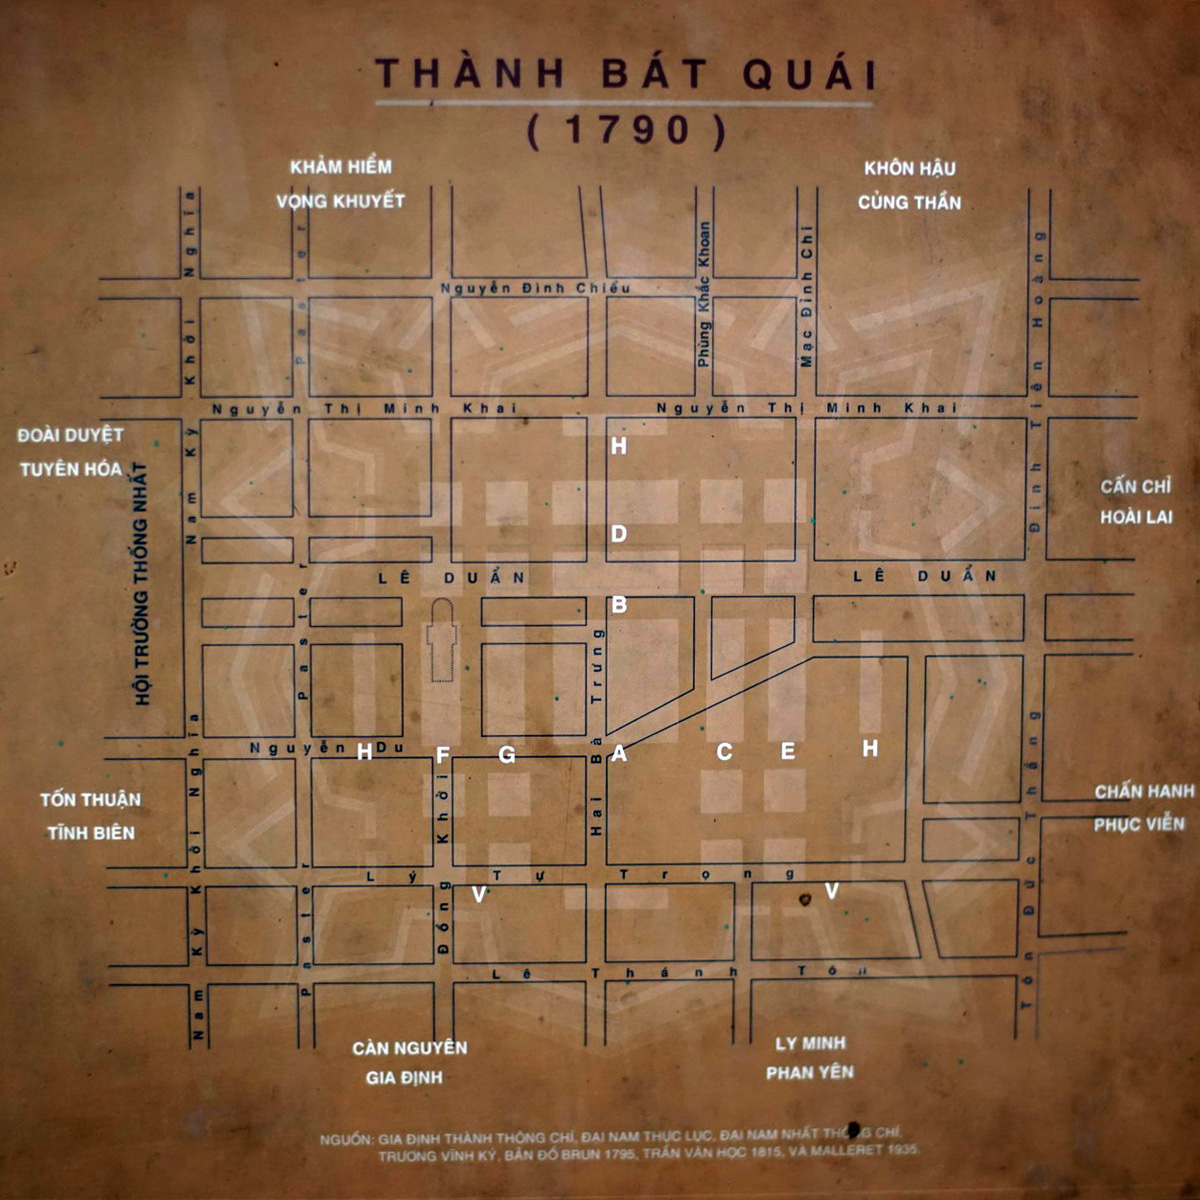 Diện mạo thành Bát Quái nổi tiếng Sài Gòn – Gia Định xưa